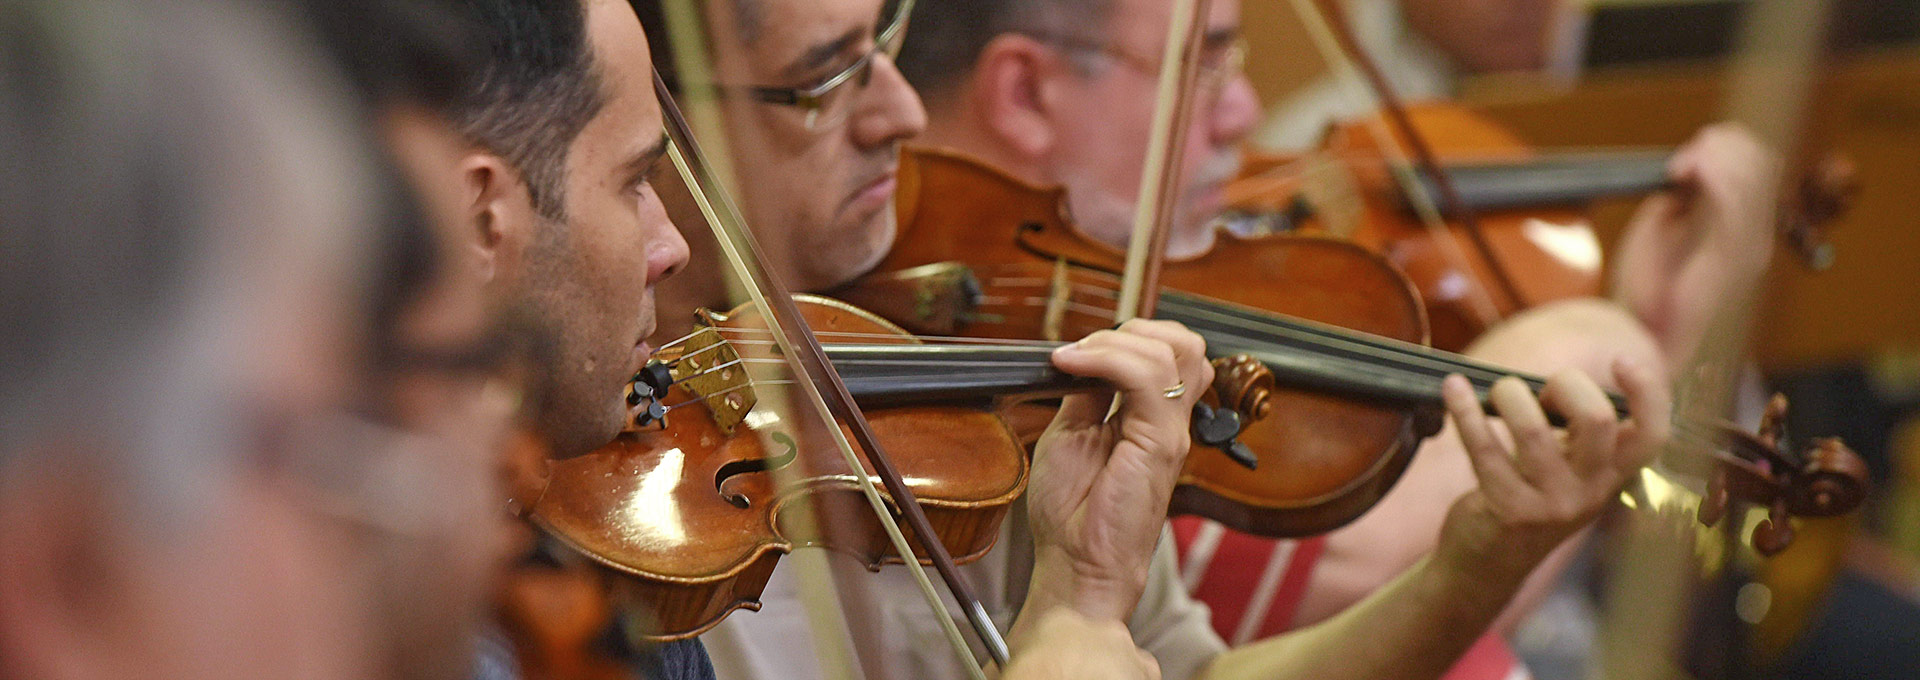 Audiodescrição: Em área interna, imagem close-up e em perspectiva, três homens tocam violino, dispostos um ao lado do outro, sendo que estão posicionados da esquerda para a direita, com olhares voltados para a direita. Imagem 1 de 1.